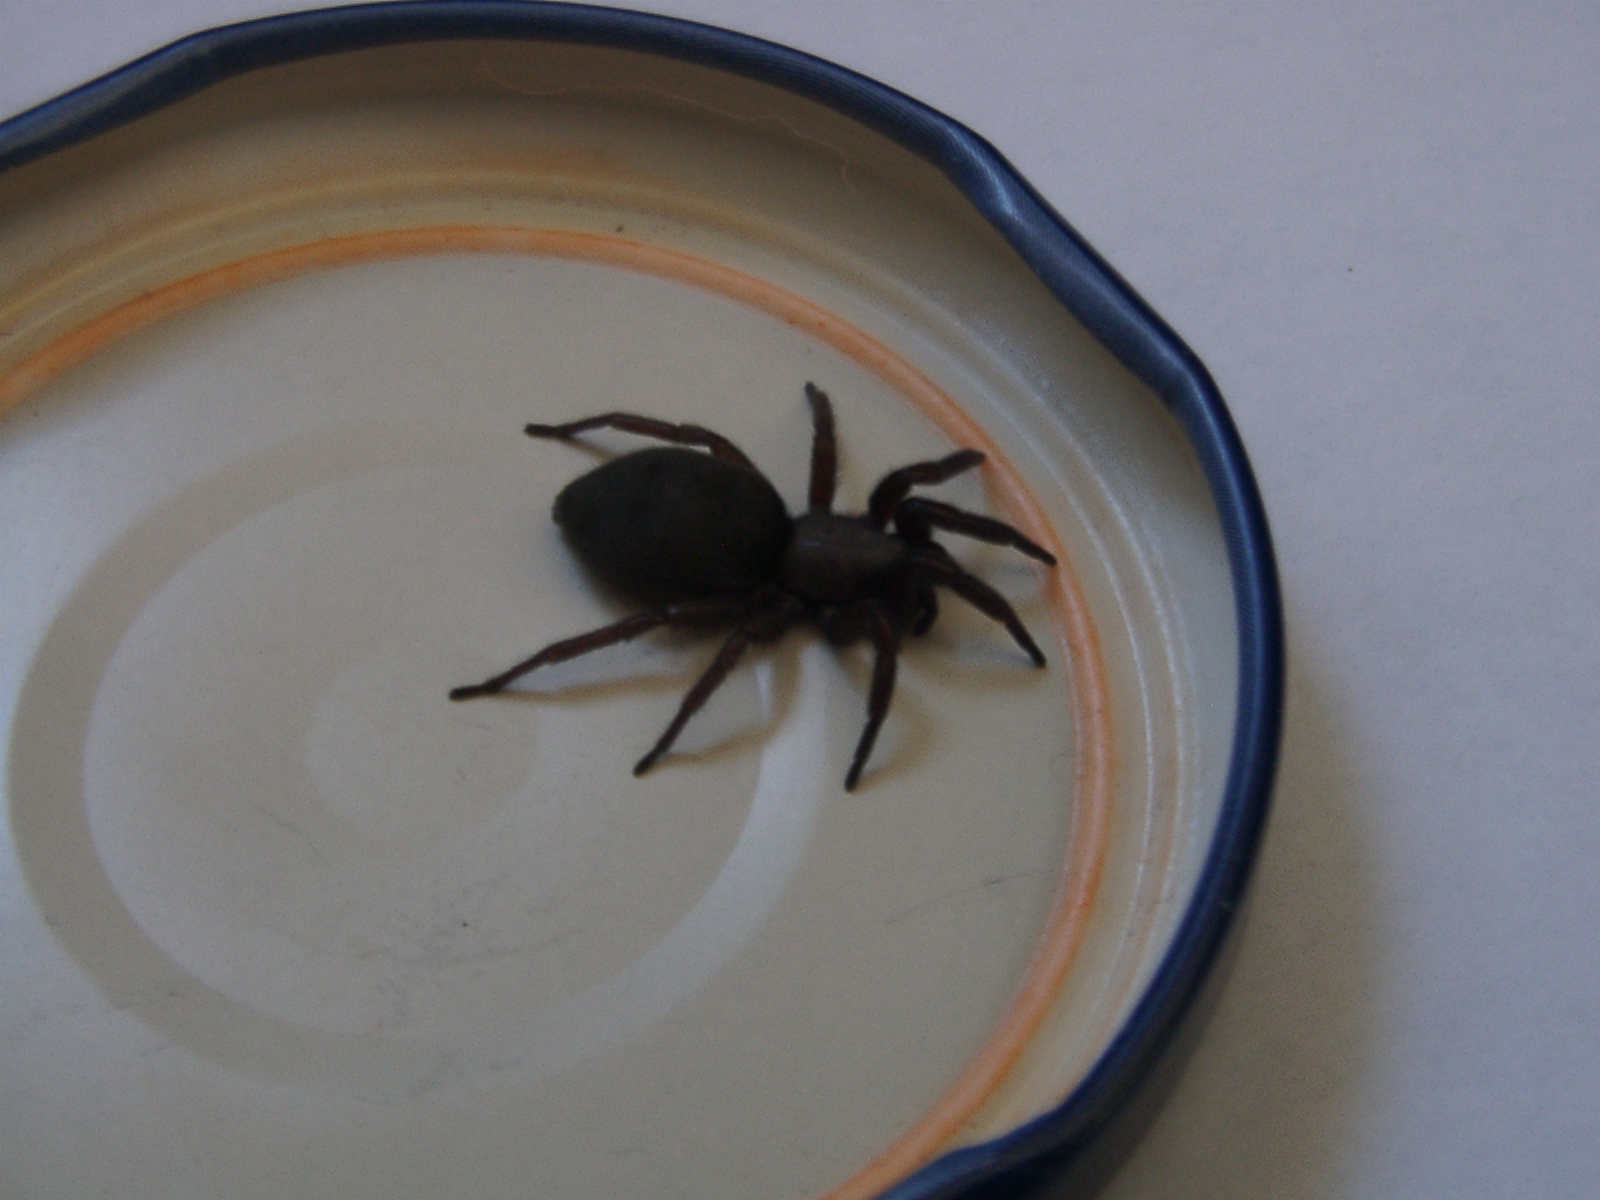 Unbekannte Spinne im Haus gefunden - Spinnen (Araneae) bestimmen - ACTIAS